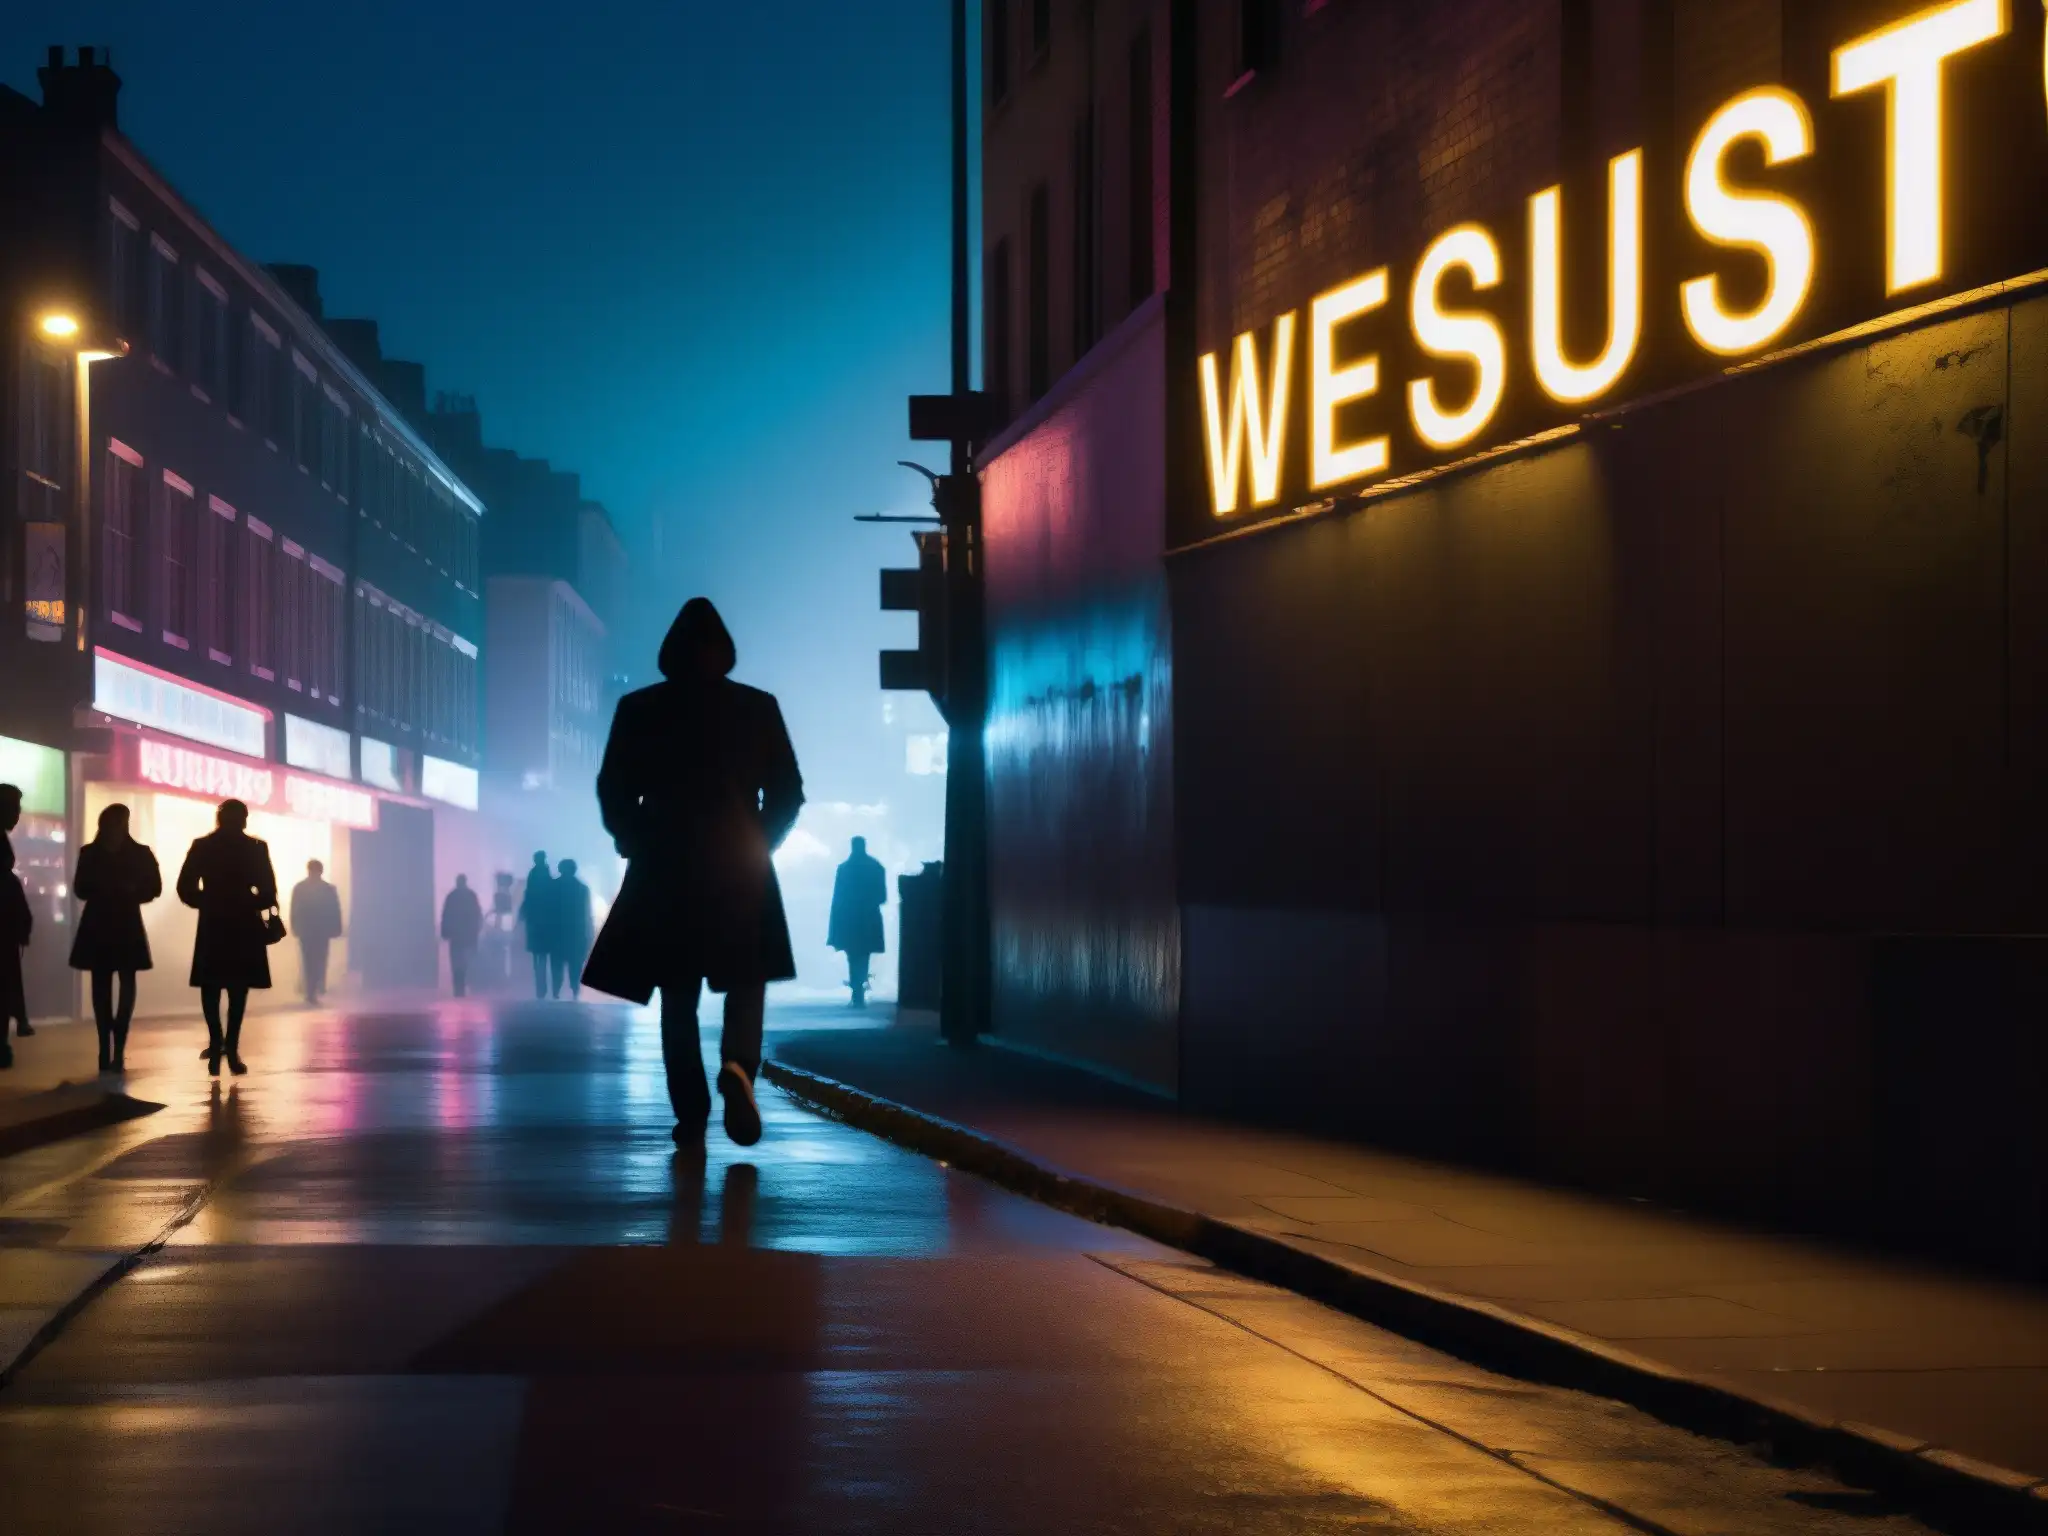 Una misteriosa calle urbana iluminada por luces de neón y farolas, con siluetas de personas y una figura en sombras